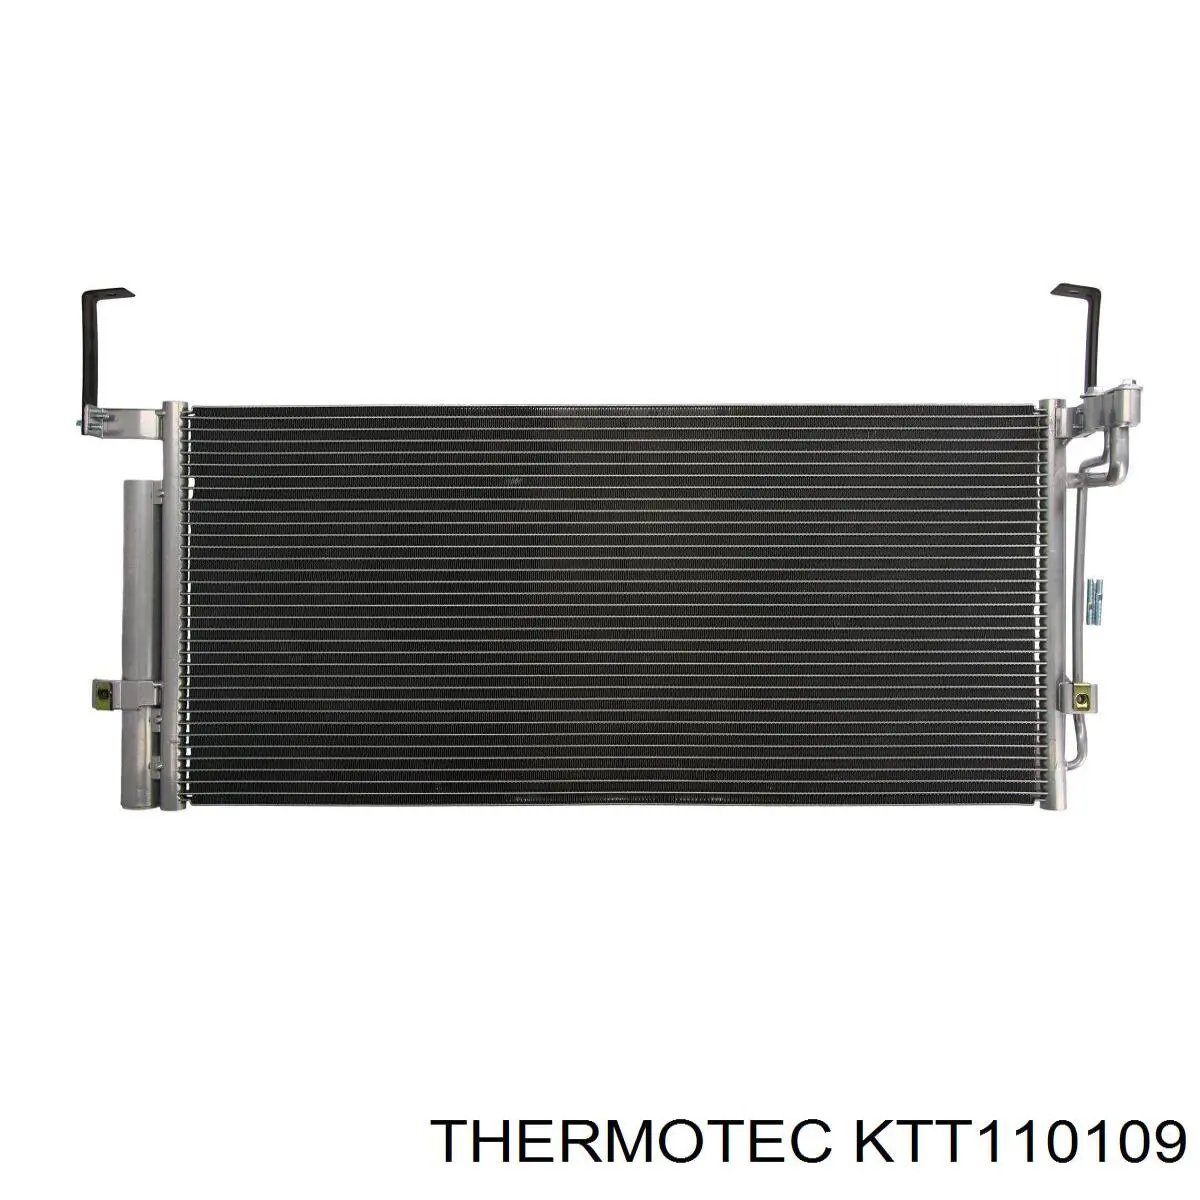 KTT110109 Thermotec condensador aire acondicionado